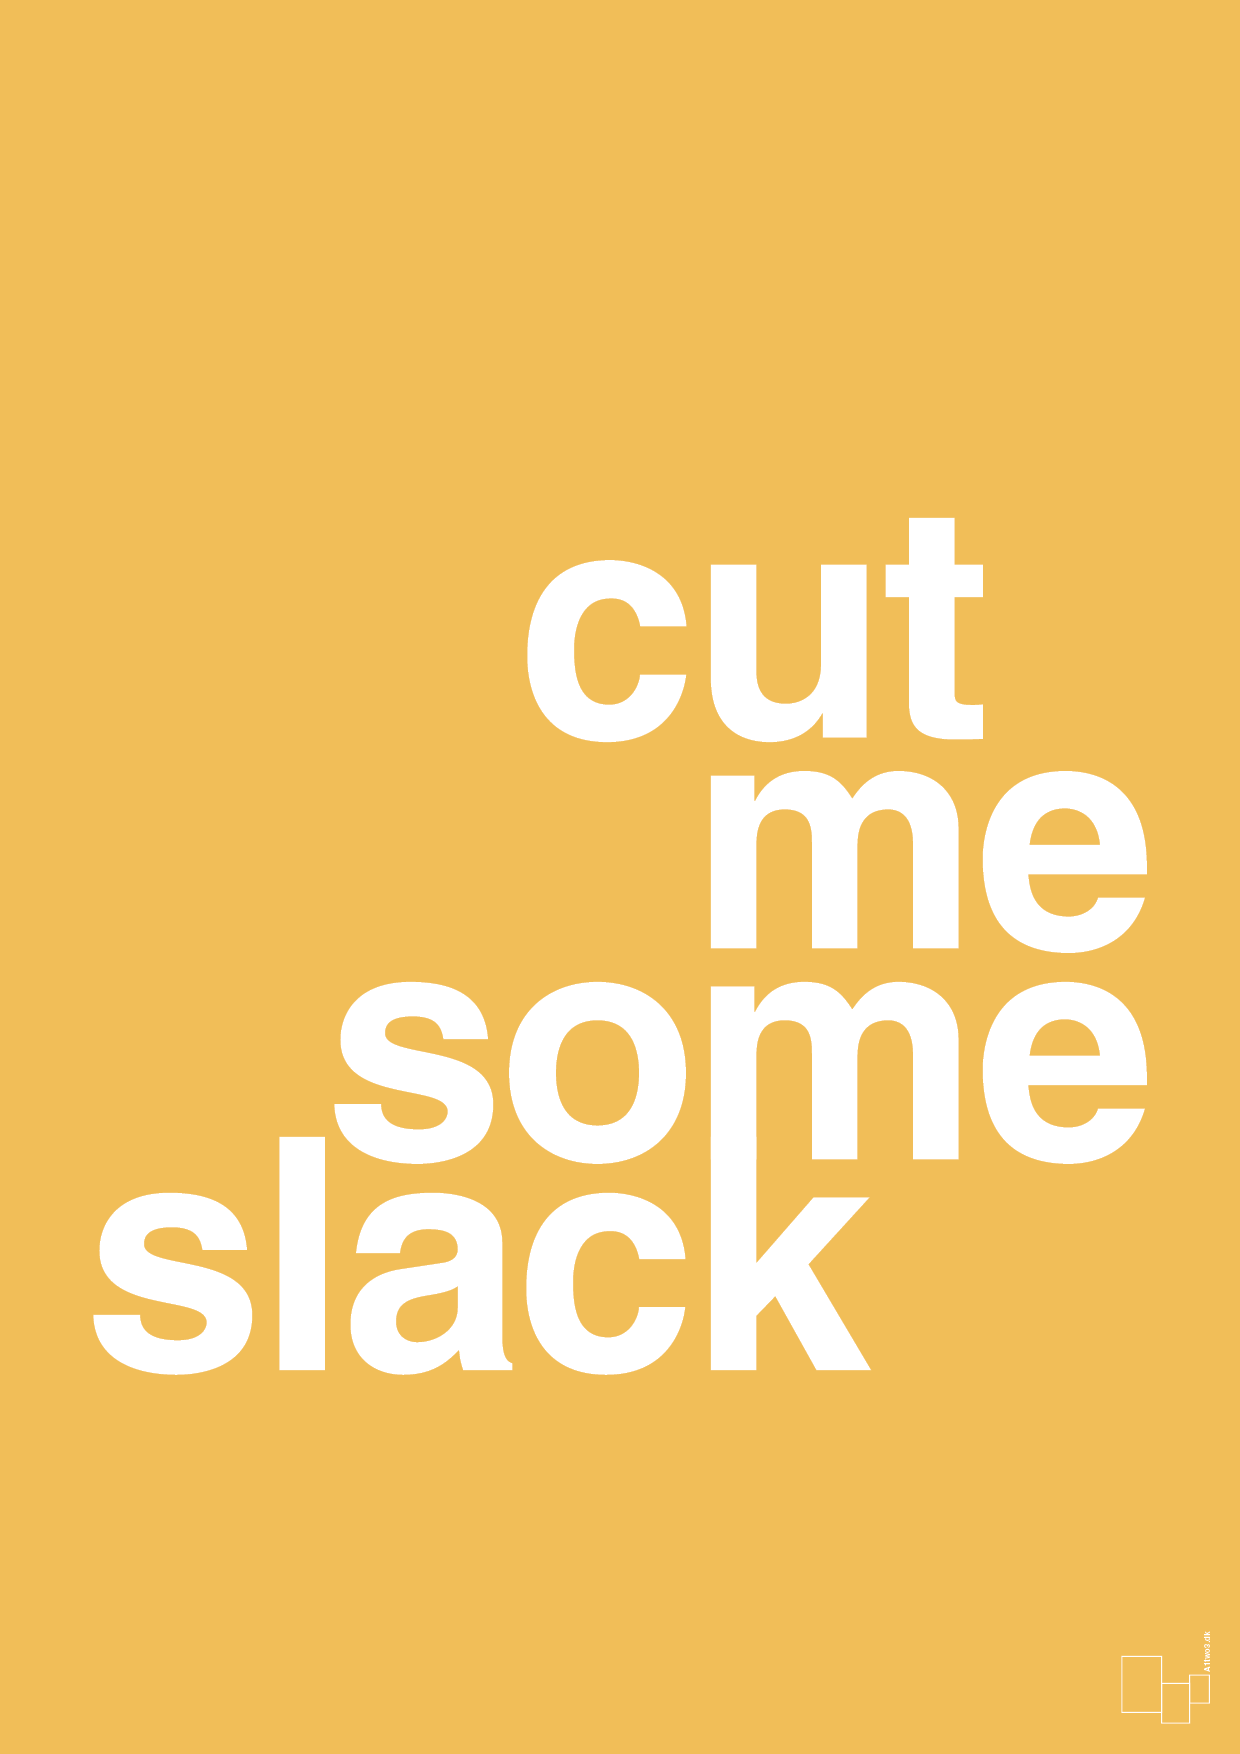 cut me some slack - Plakat med Ordsprog i Honeycomb